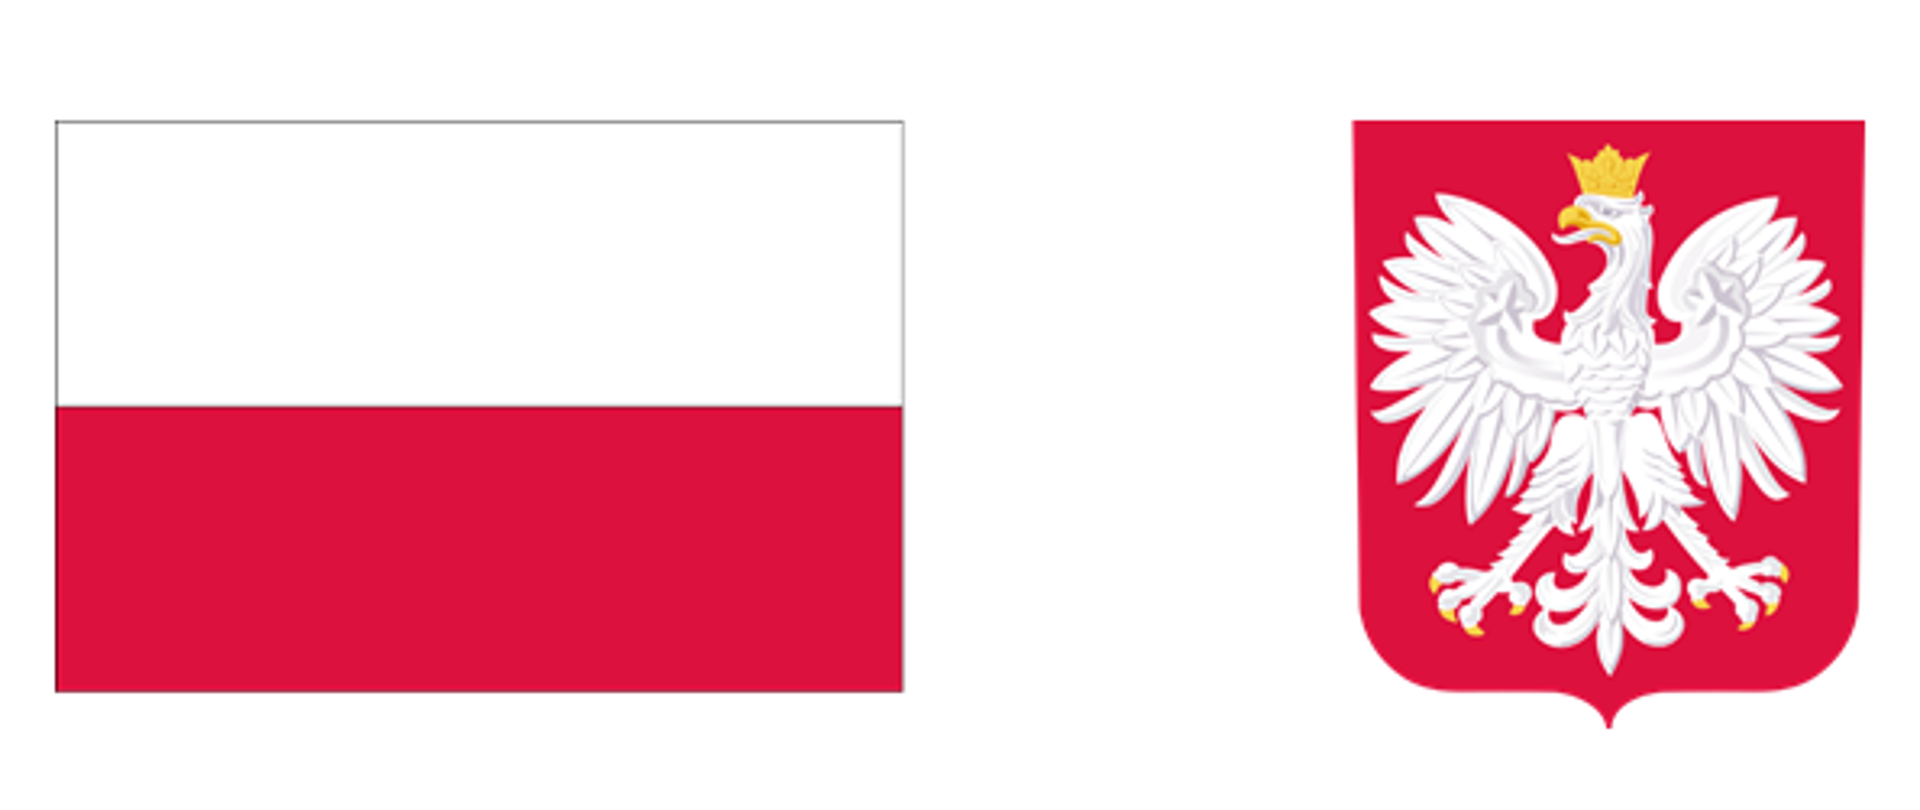 Program „Asystent osobisty osoby niepełnosprawnej”. Logo: z lewej strony biało-czerwona polska flaga, z prawej godło państwowe Rzeczypospolitej Polskiej